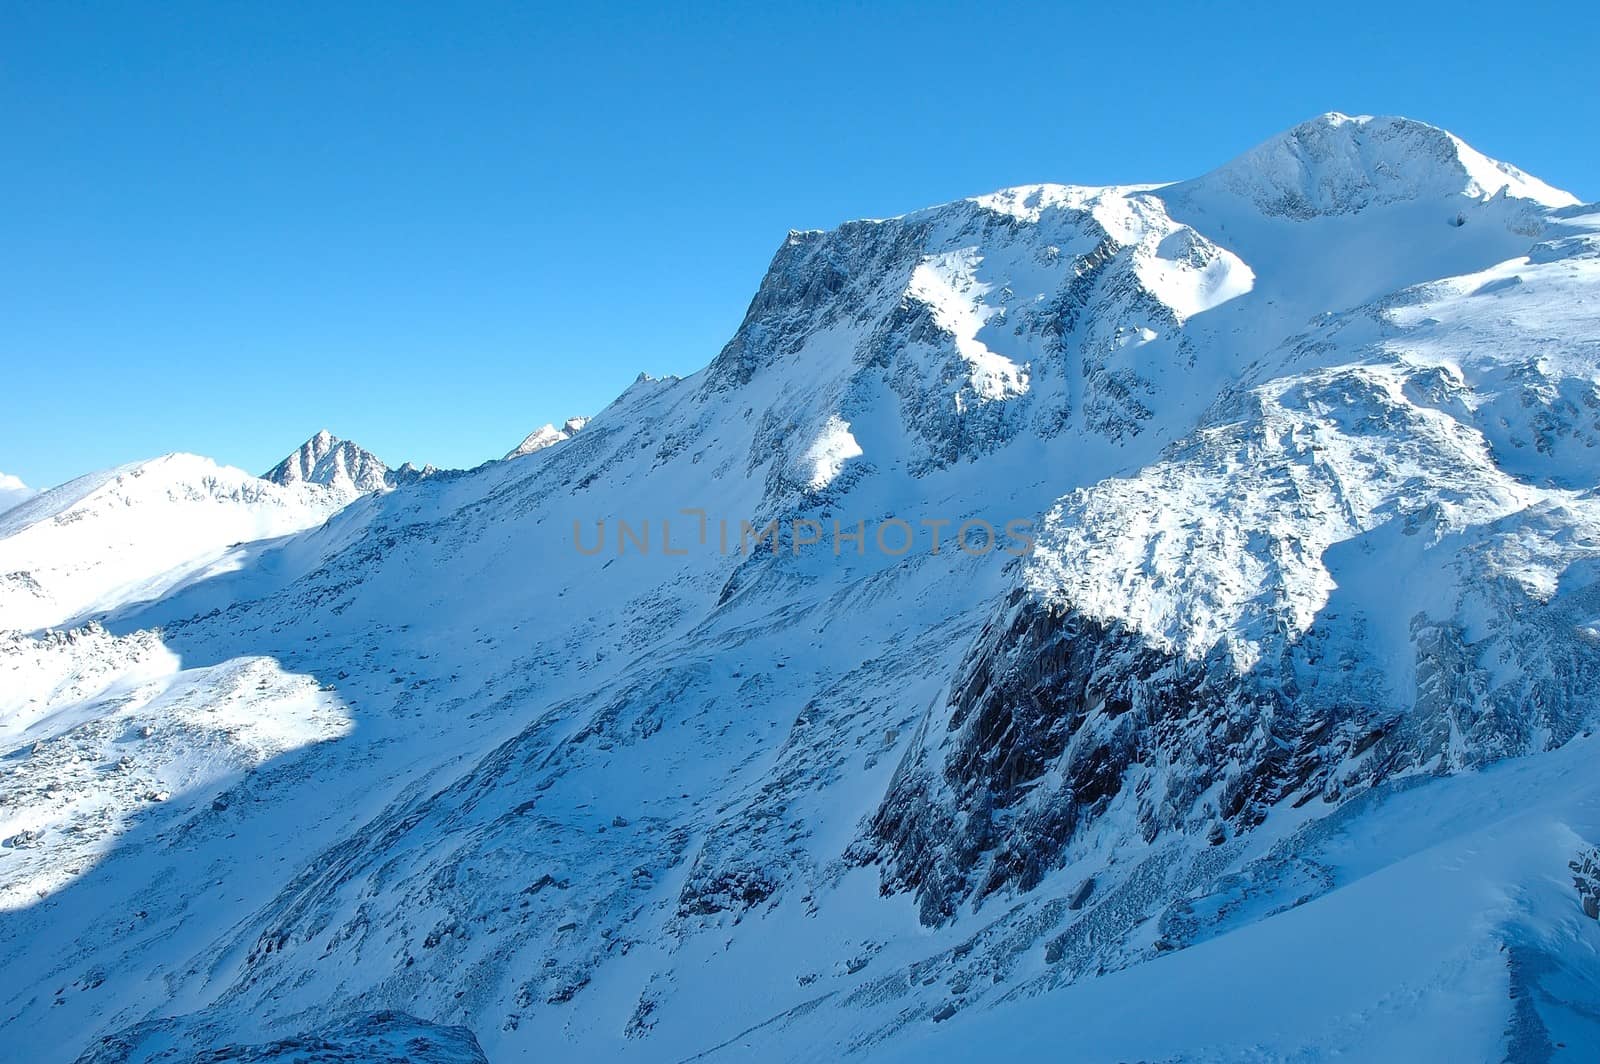 Peaks in Alps in winter by janhetman